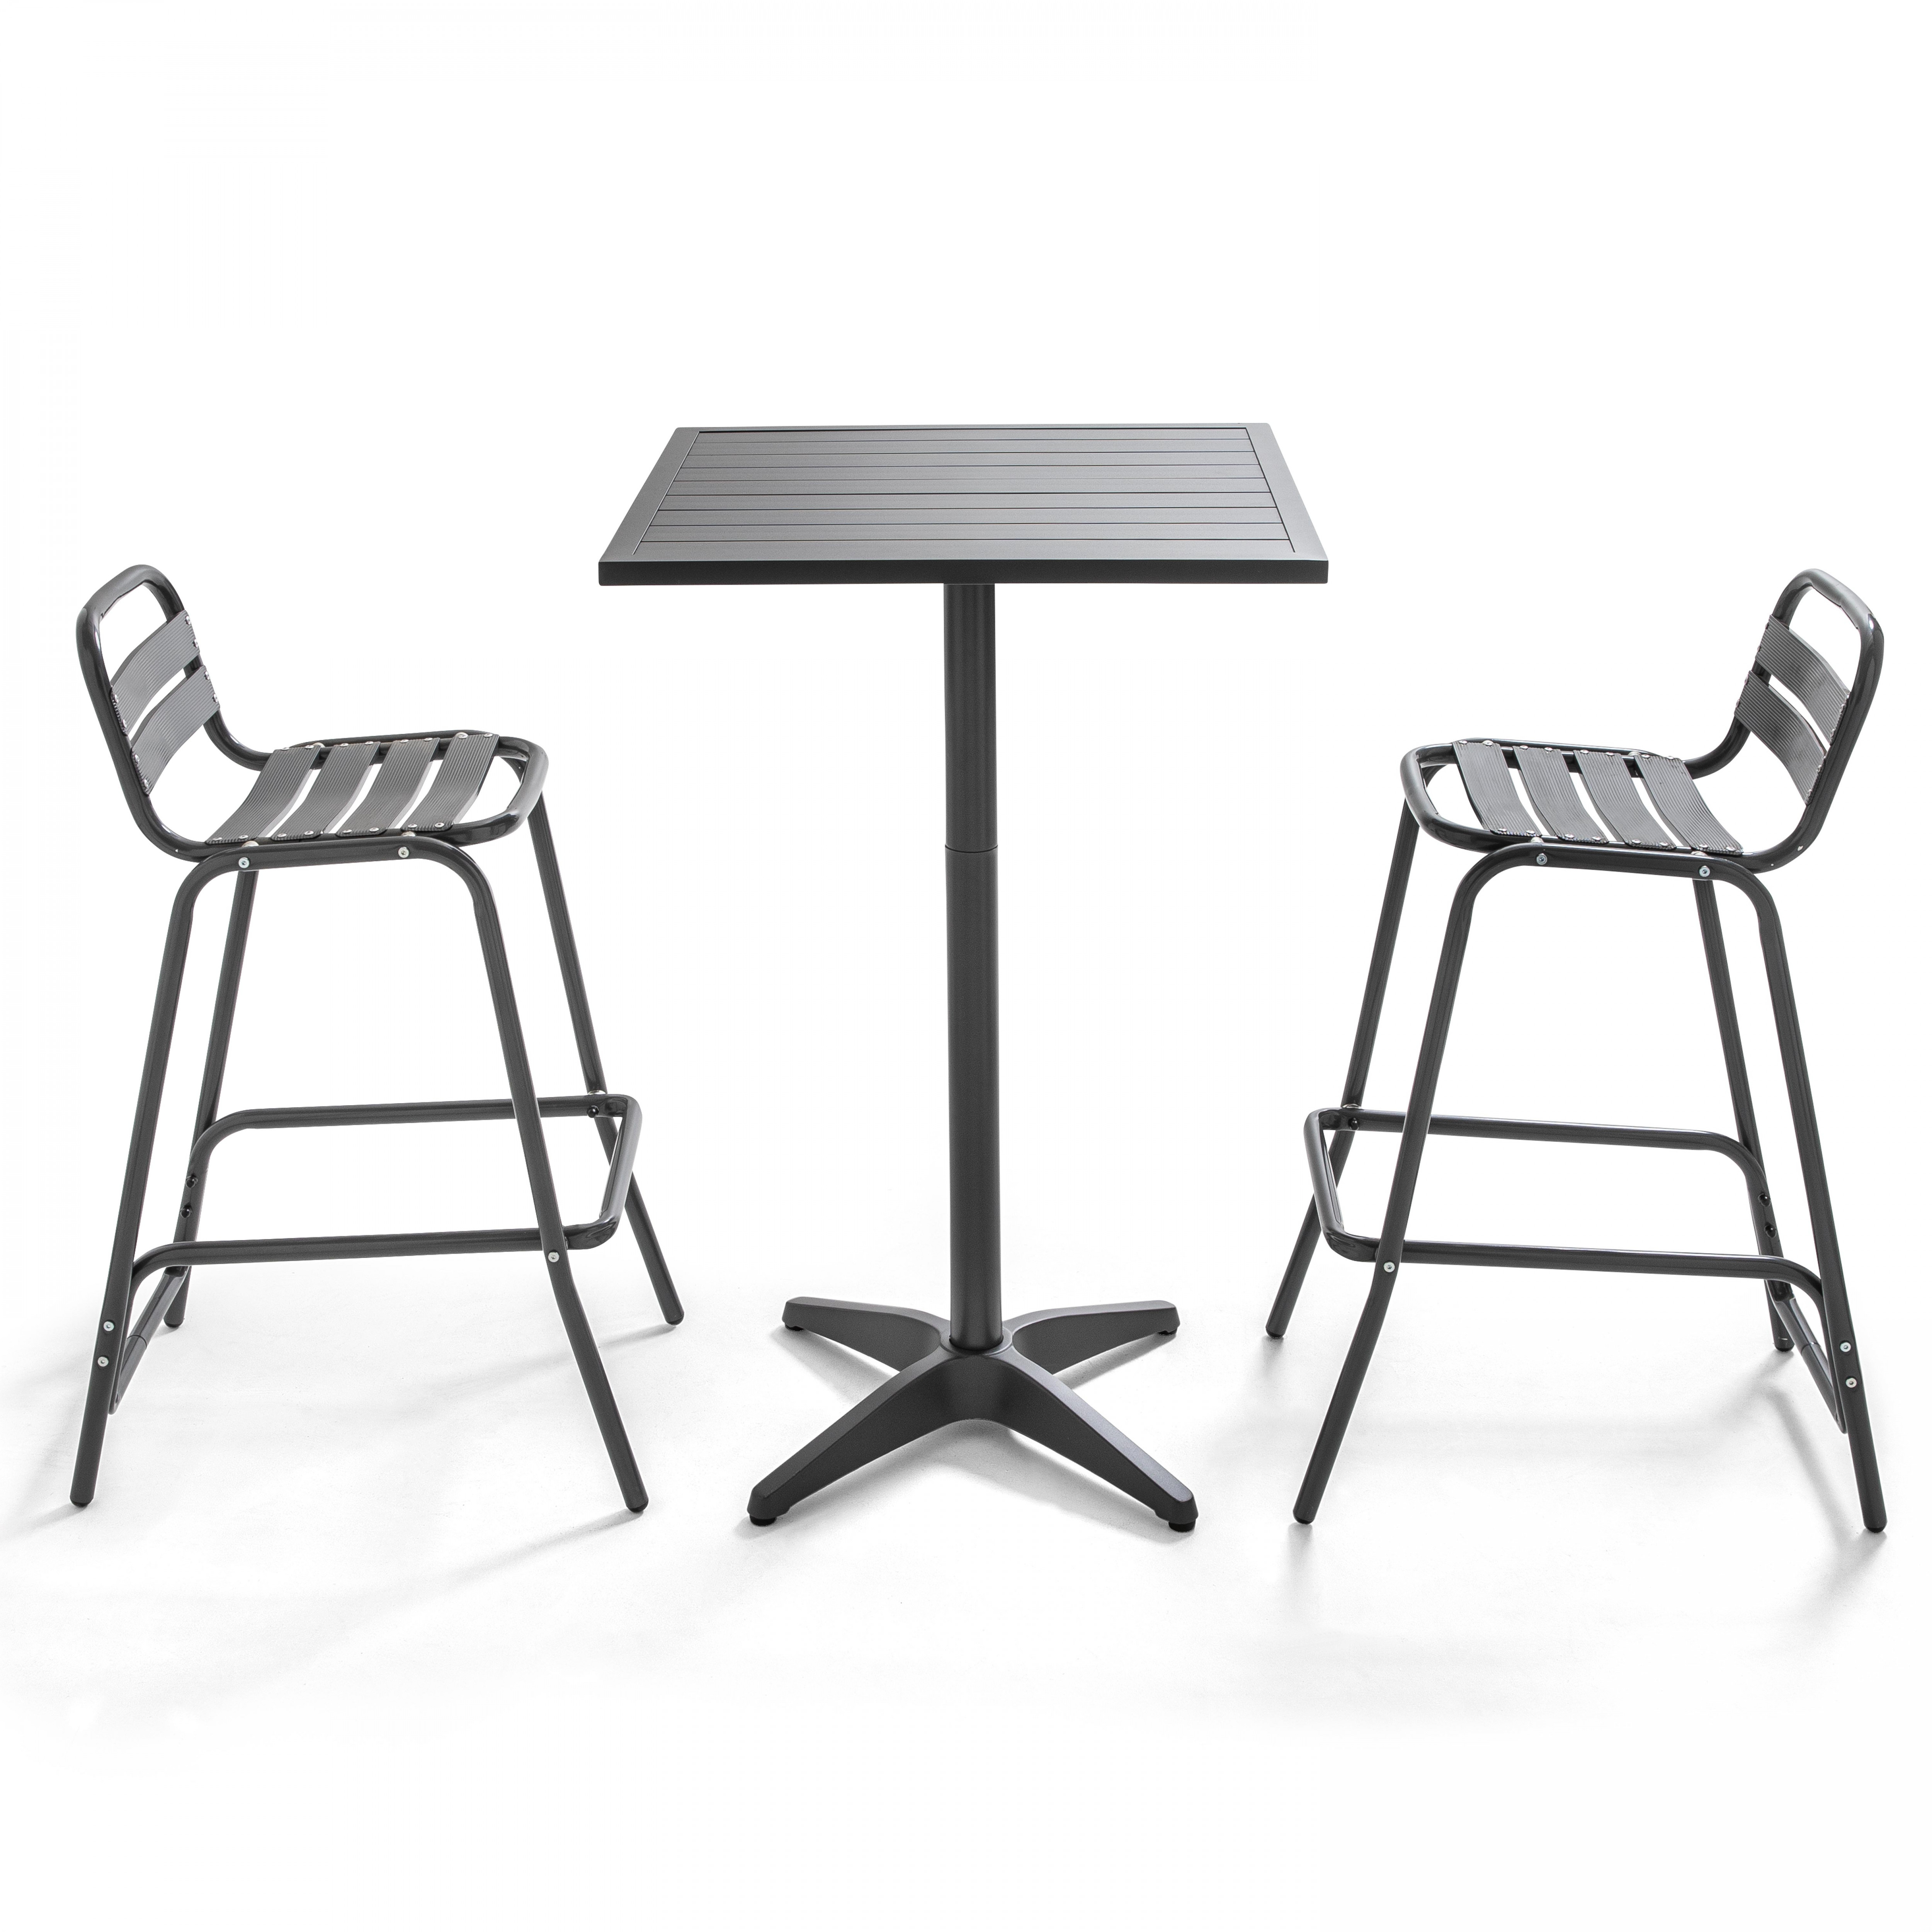 Table de jardin grise mange-debout et 2 chaises hautes en aluminium